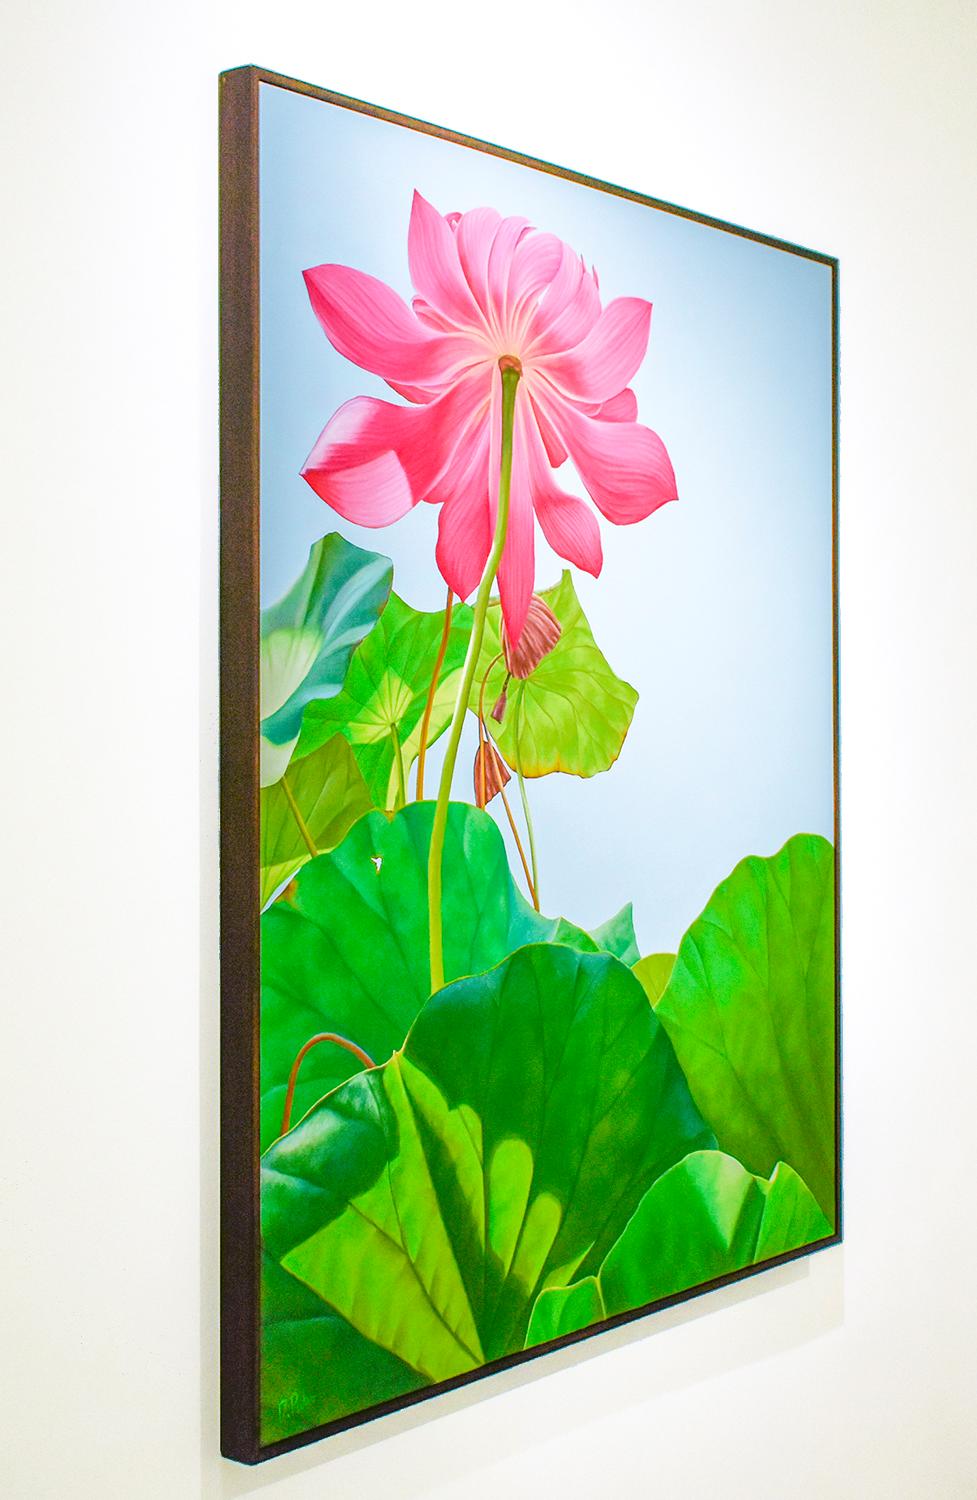 Lotus 25: Fotorealistisches Stillleben mit rosa Blume und grünen Blättern auf blauem Grund (Moderne), Painting, von Frank DePietro